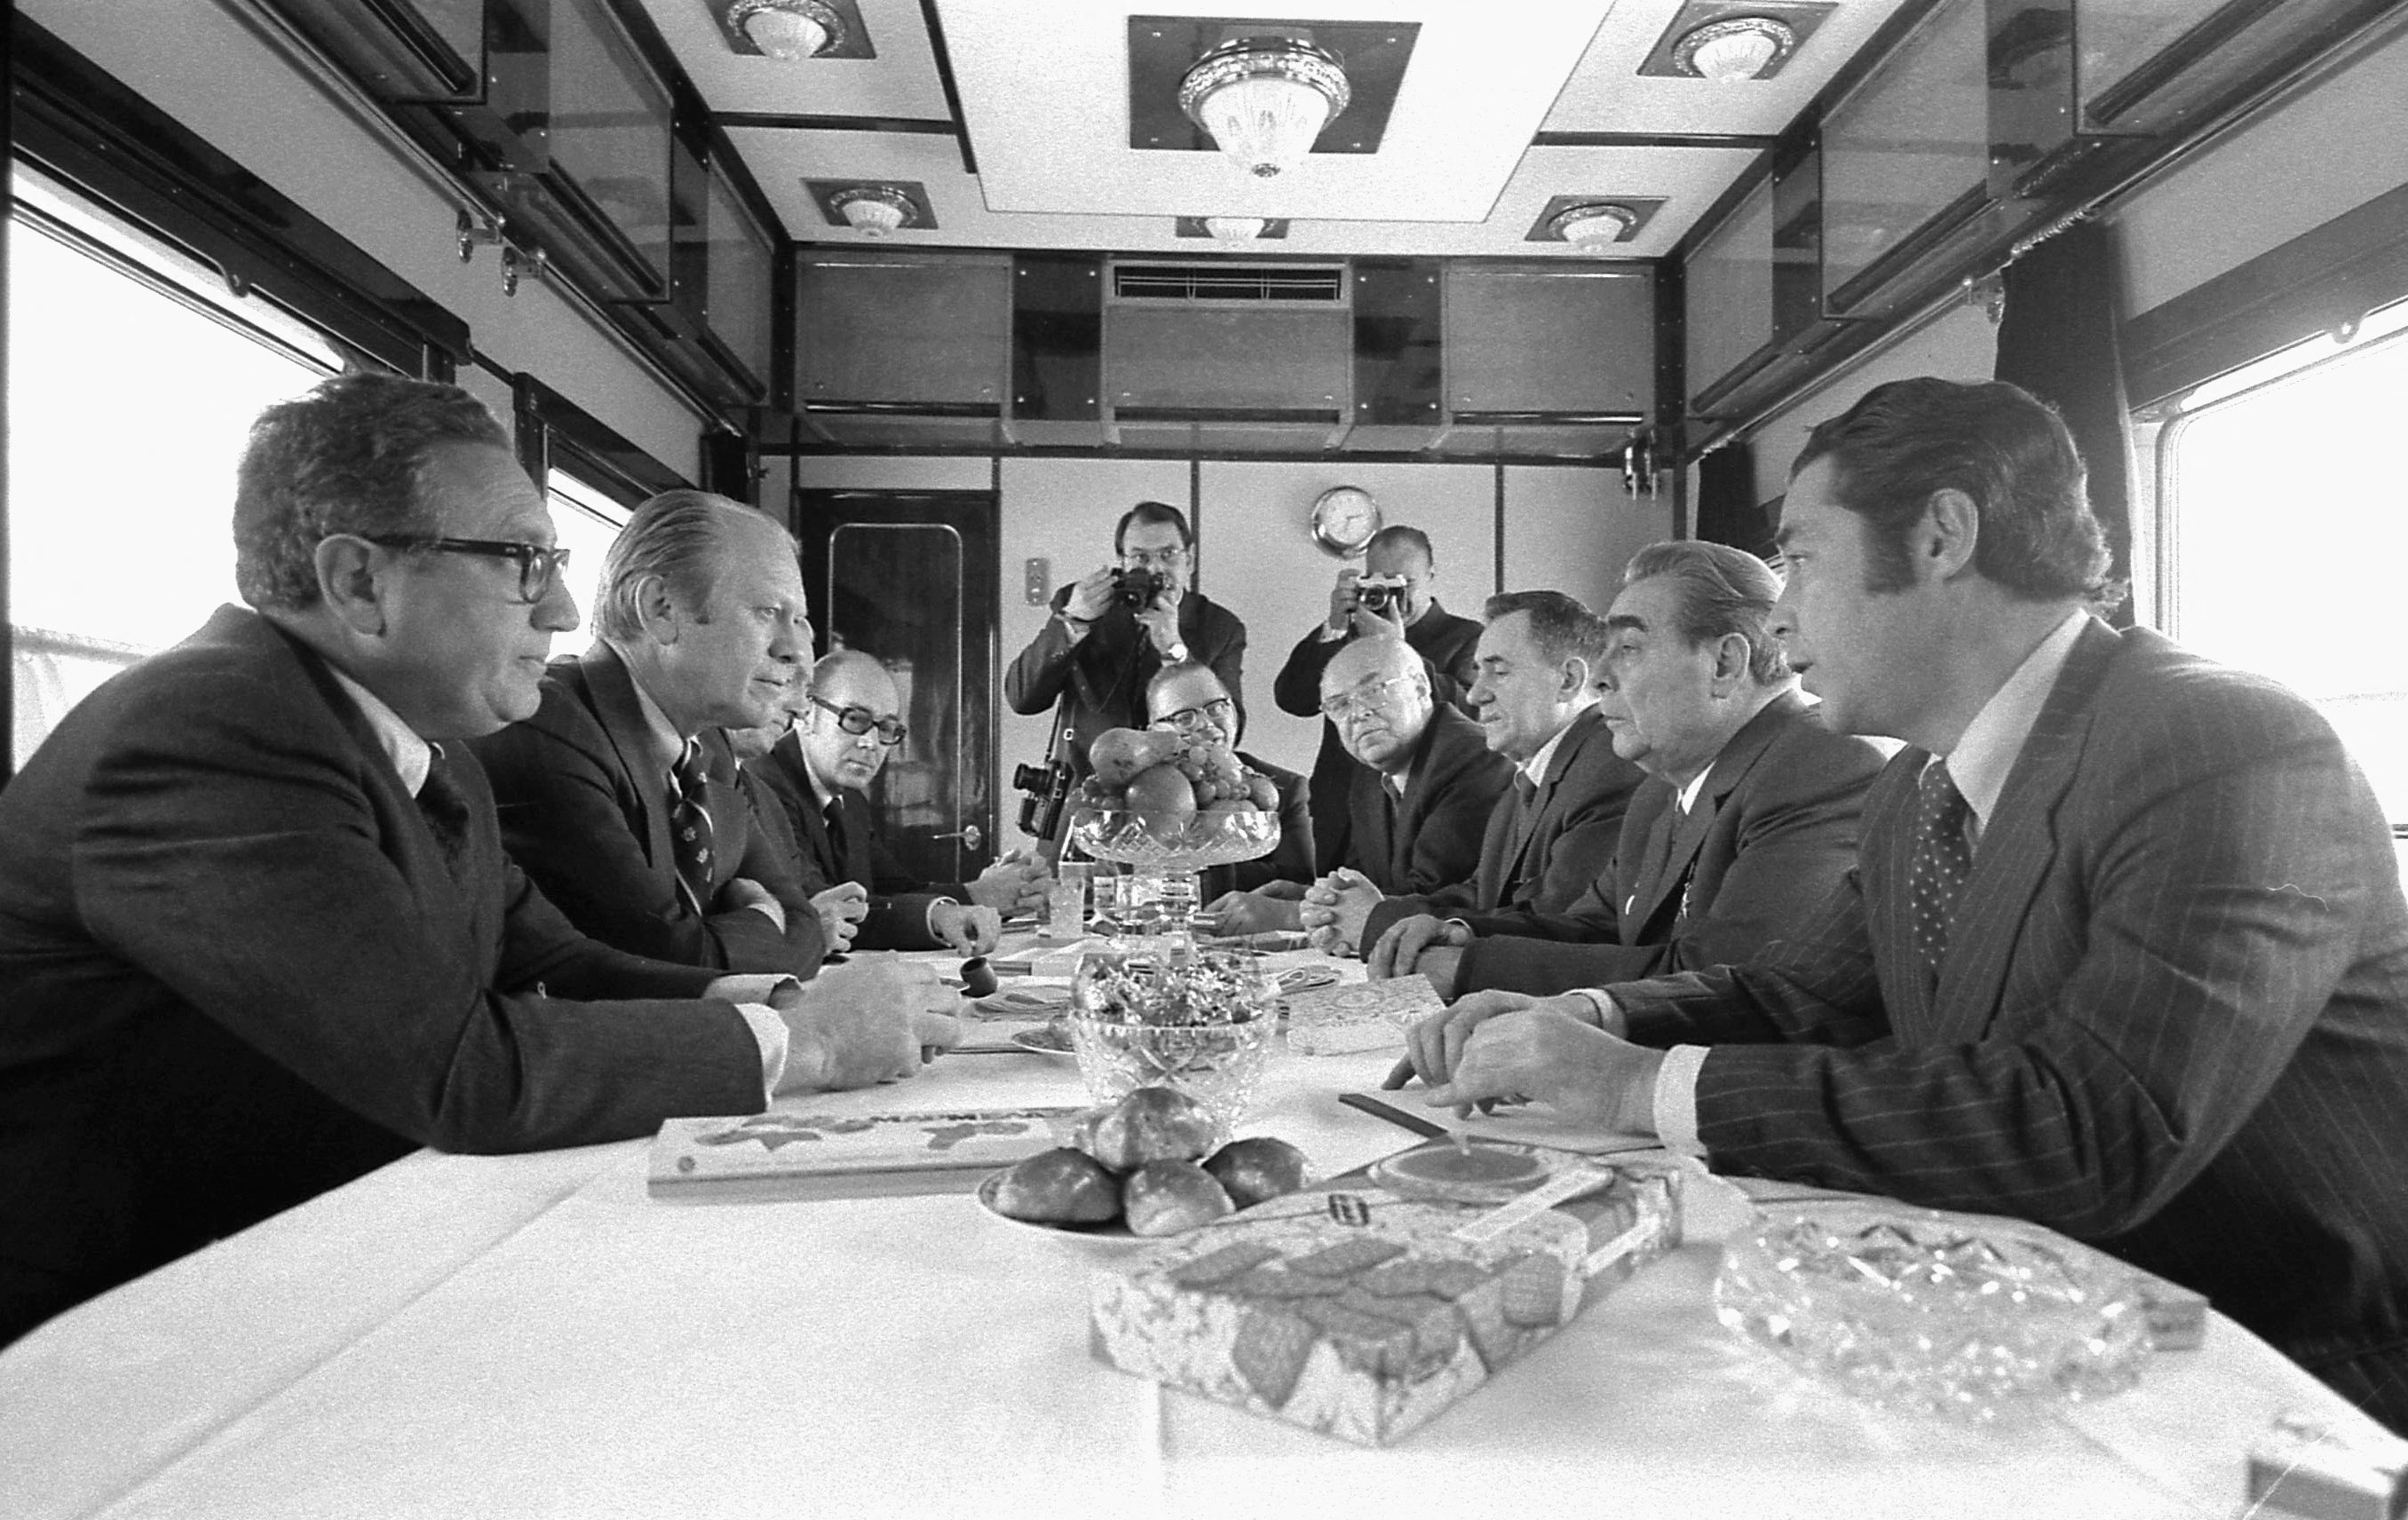 1974年11月23日、ロシアのウラジオストクに向かうロシア列車の中で、ジェラルド・フォード米国大統領、ヘンリー・キッシンジャー国務長官およびその他の米国代表者らがソ連のブレジネフ書記長、グロムイコ外務大臣、ドブリニン大使らと会談する。 ジェラルド・R・フォード図書館/ロイター経由 